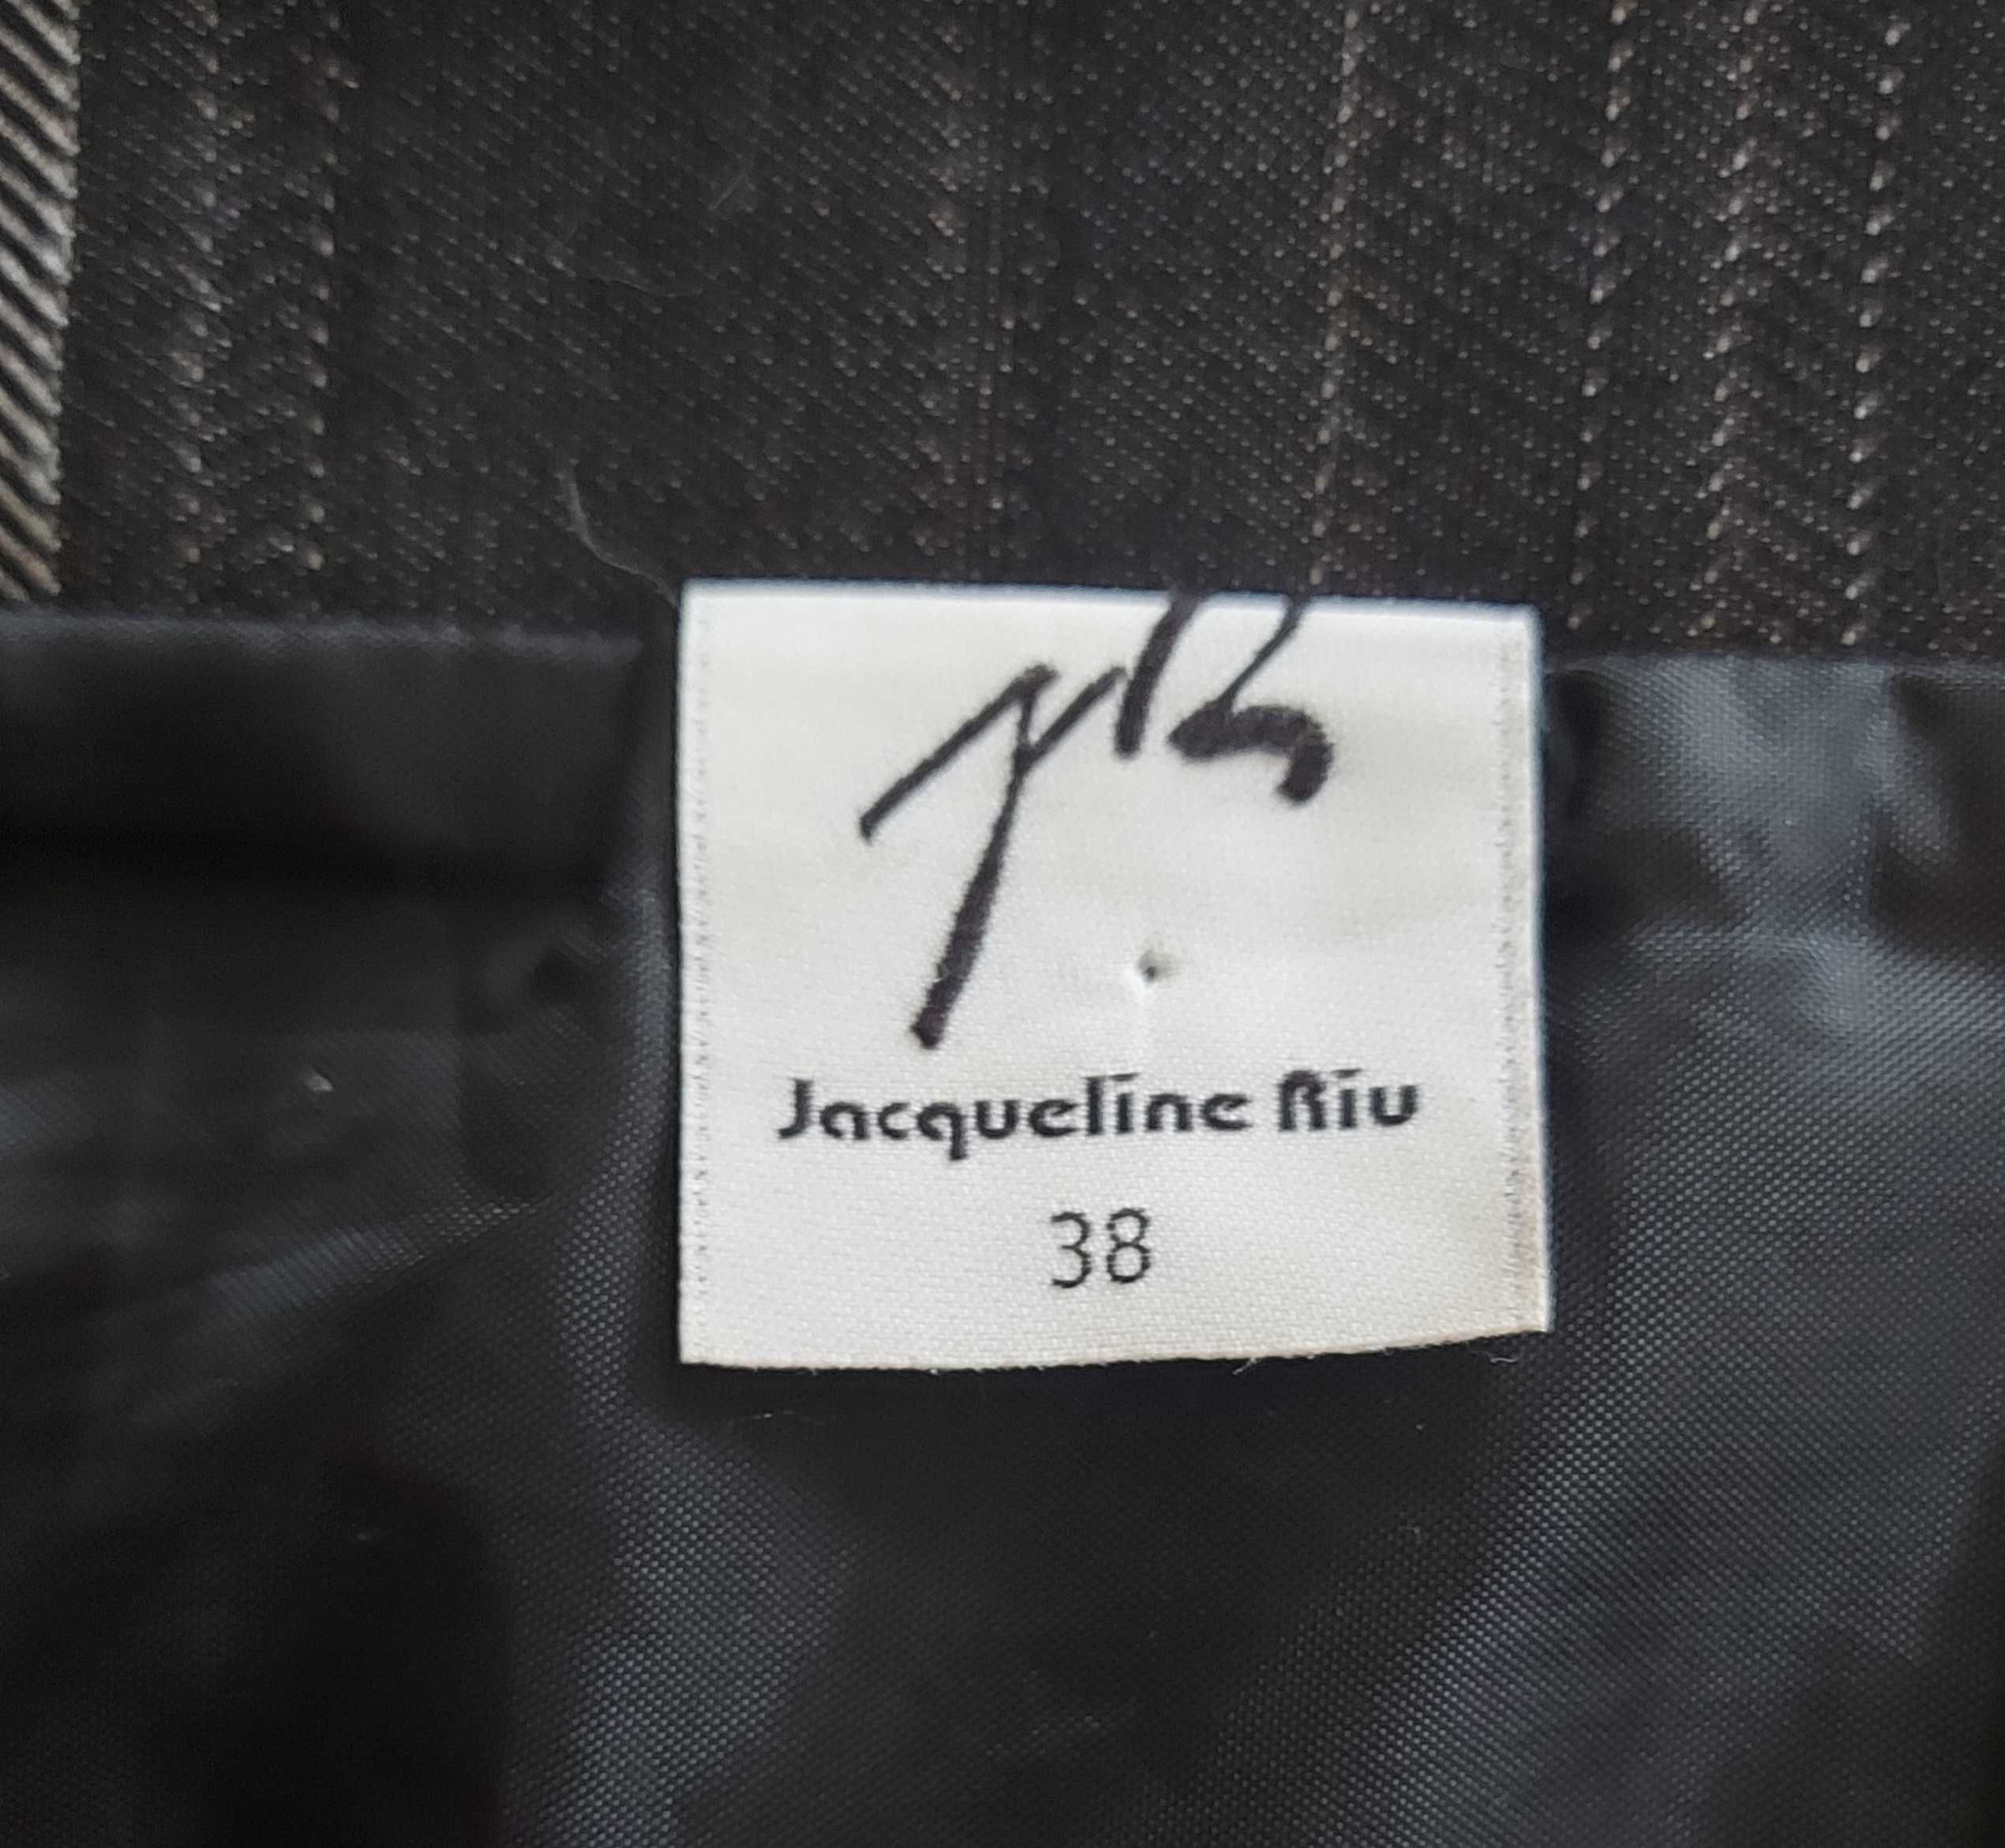 Jacgueline Riu rozmiar 38 spódnica ciekawy fason